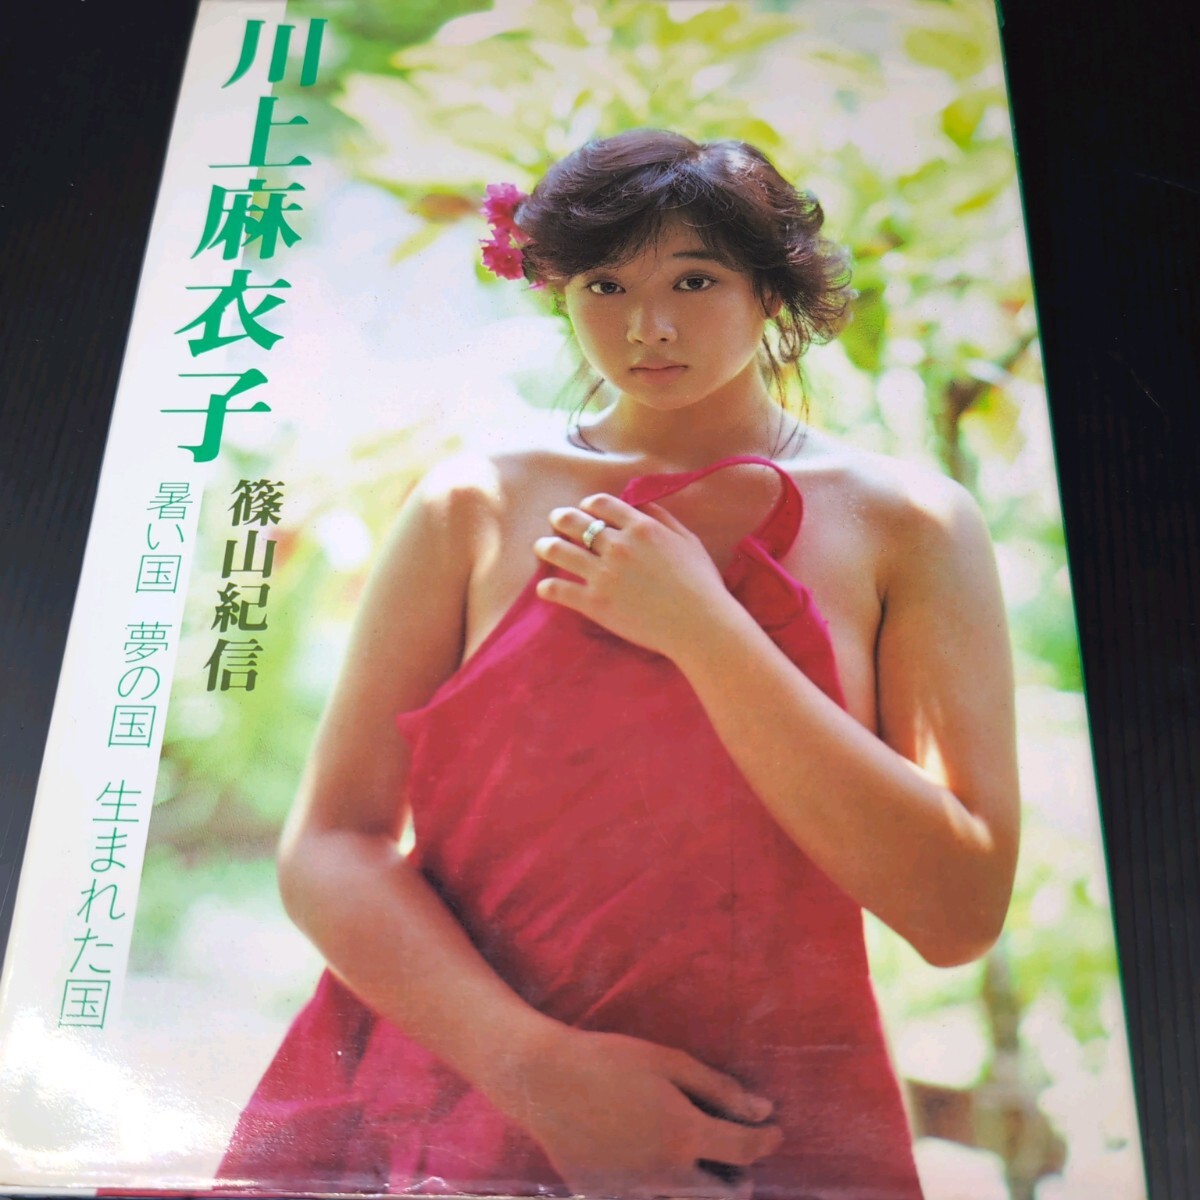 初版 川上麻衣子 Maiko kawakami 写真集 暑い国 夢の国 生まれた国 篠山紀信 昭和58年発行 小学館の画像1